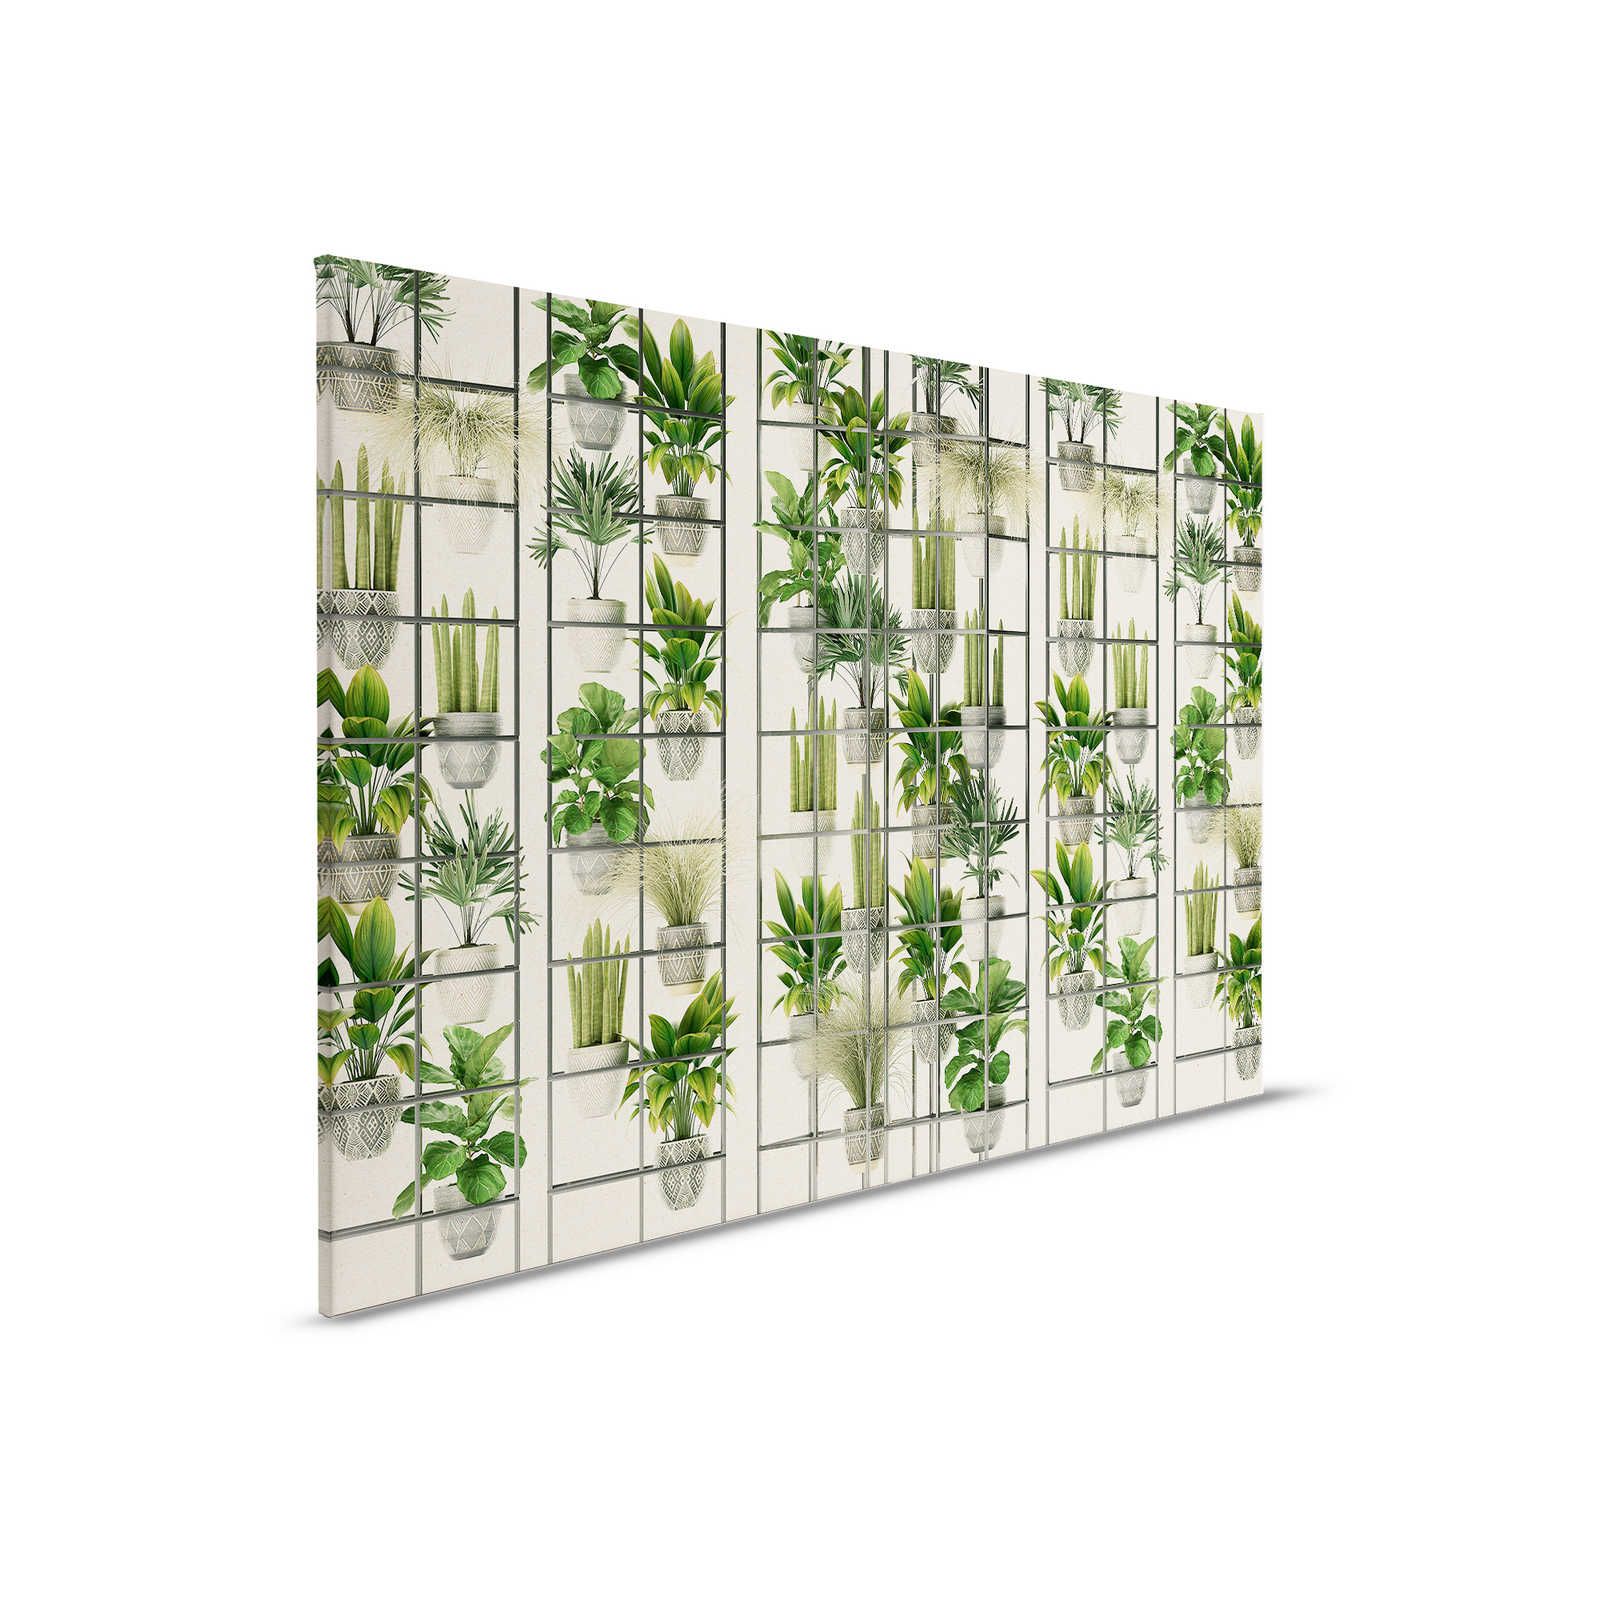 Plant Shop 2 - Leinwandbild moderne Pflanzenwand in Grün & Grau – 0,90 m x 0,60 m
